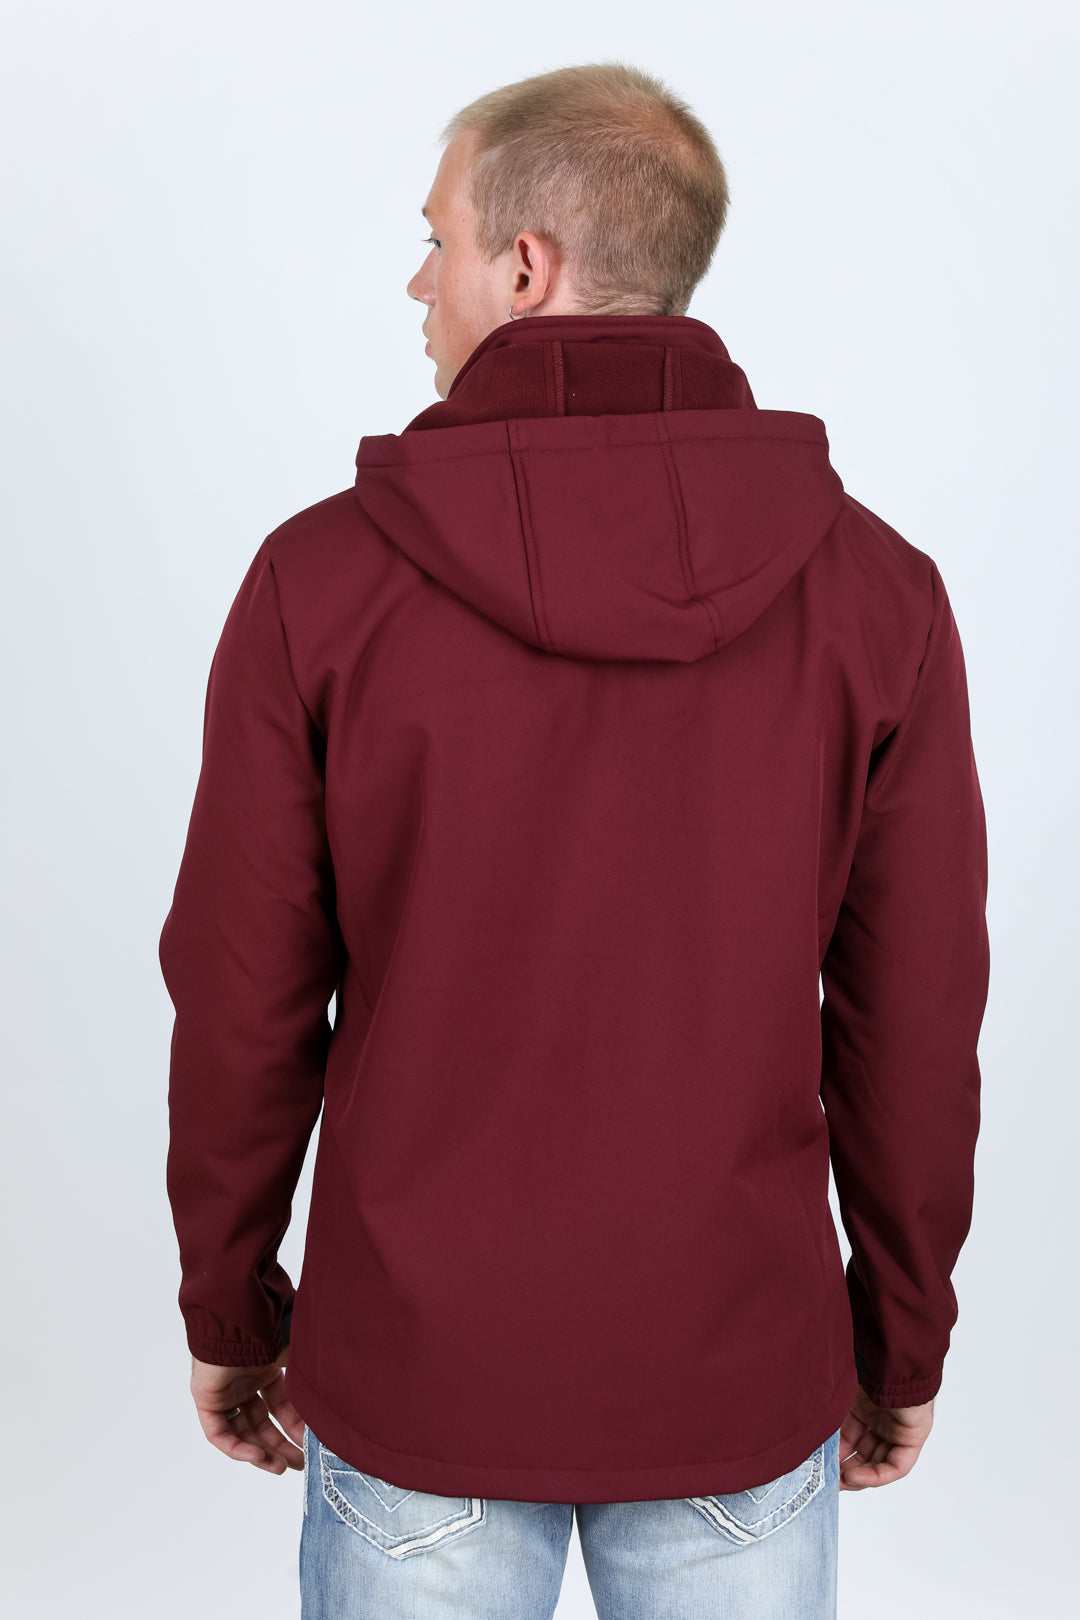 Mens Hooded Softshell Water-Resistant Jacket - Burgundy